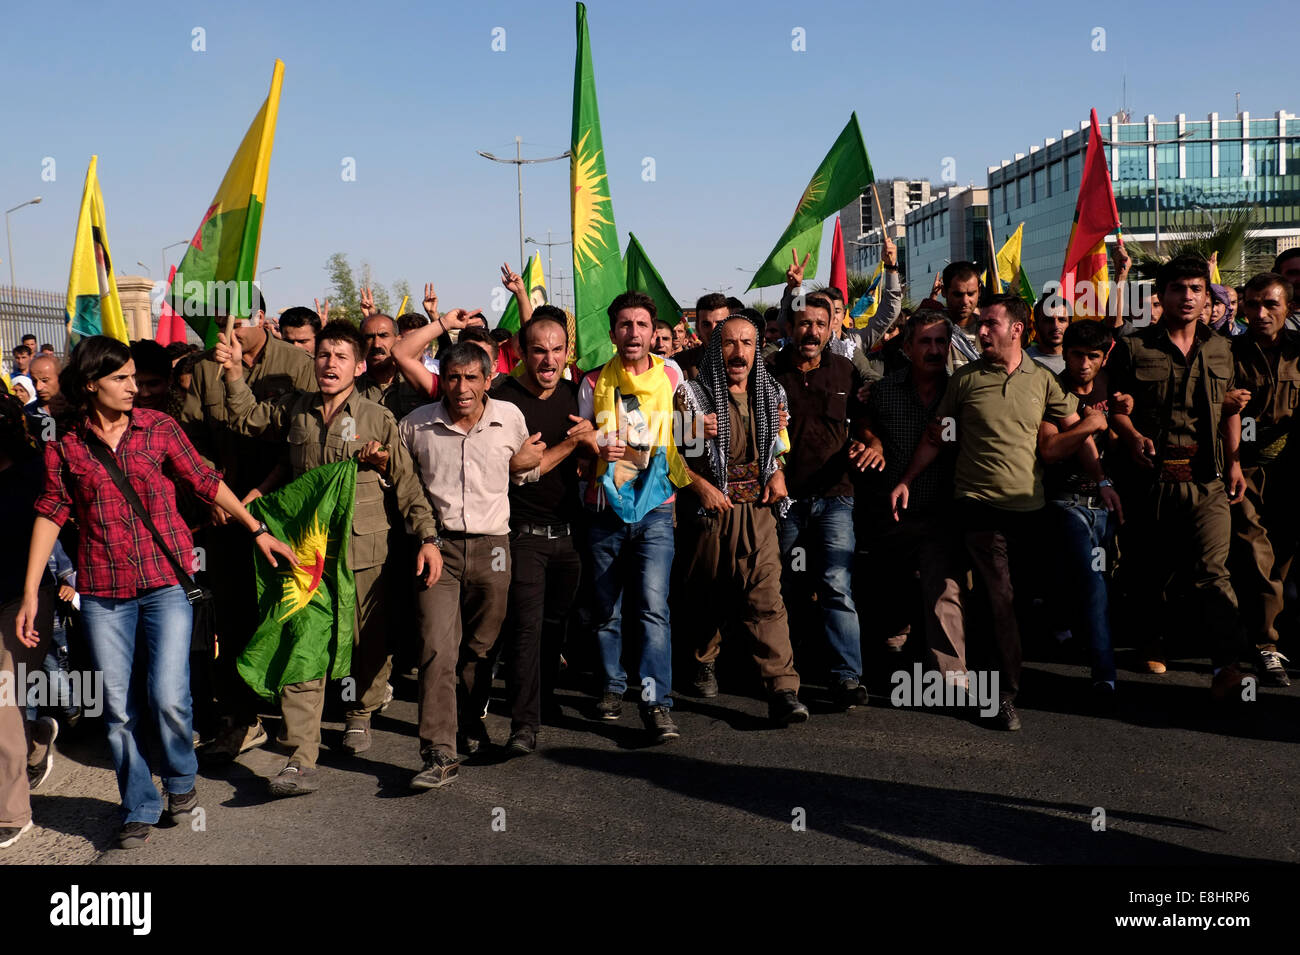 Peuple kurde qui participent à une manifestation en soutien de Kurdes syriens souffrant d'ISIS les attaques dans la ville syrienne de Kobane dans la ville d'Erbil Arbil Irbil, aussi orthographié ou la capitale de la région du Kurdistan dans le nord de l'Iraq. Banque D'Images